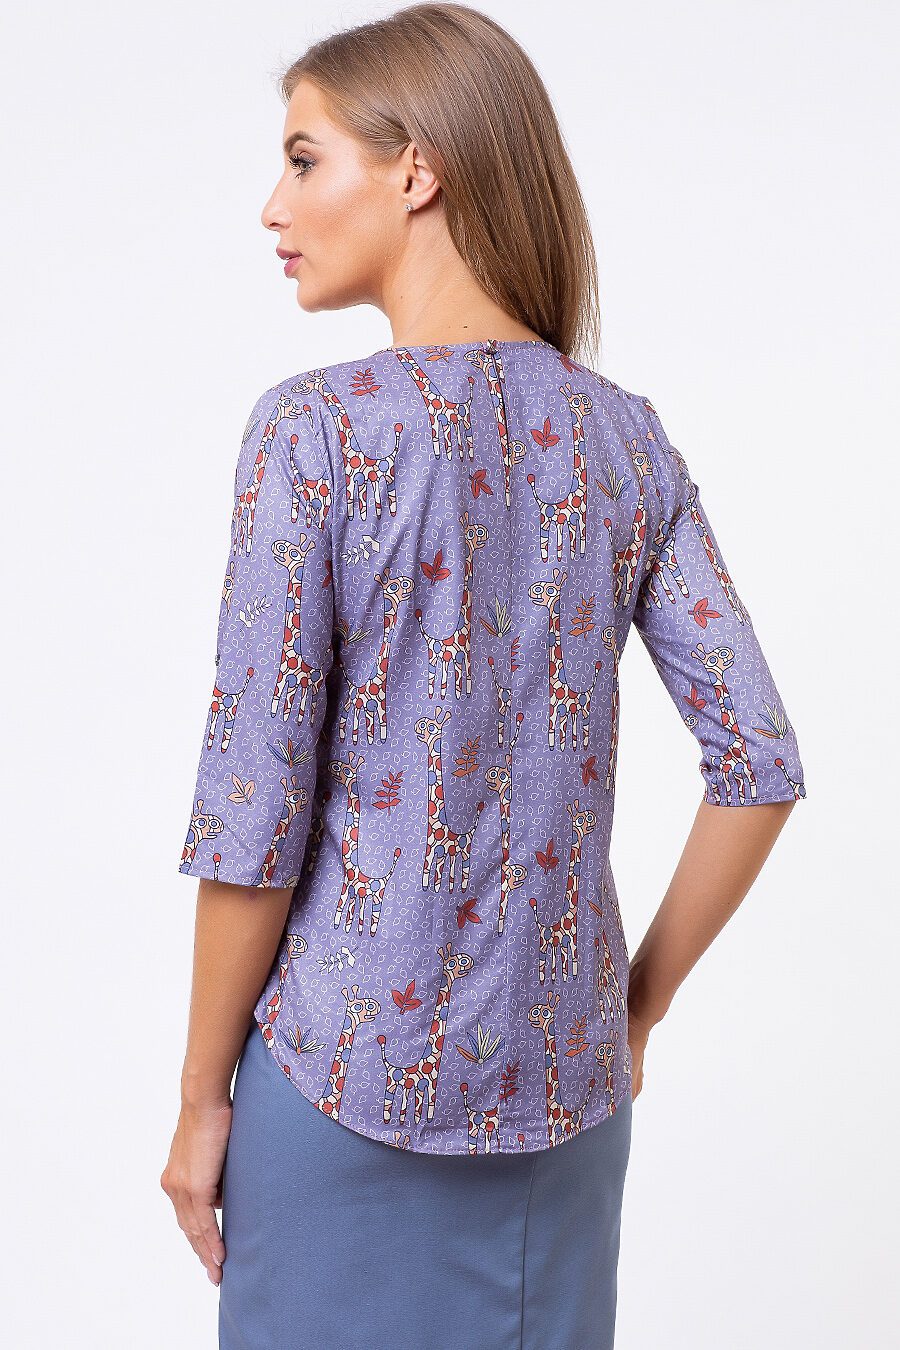 Блуза TUTACHI (125184), купить в Moyo.moda